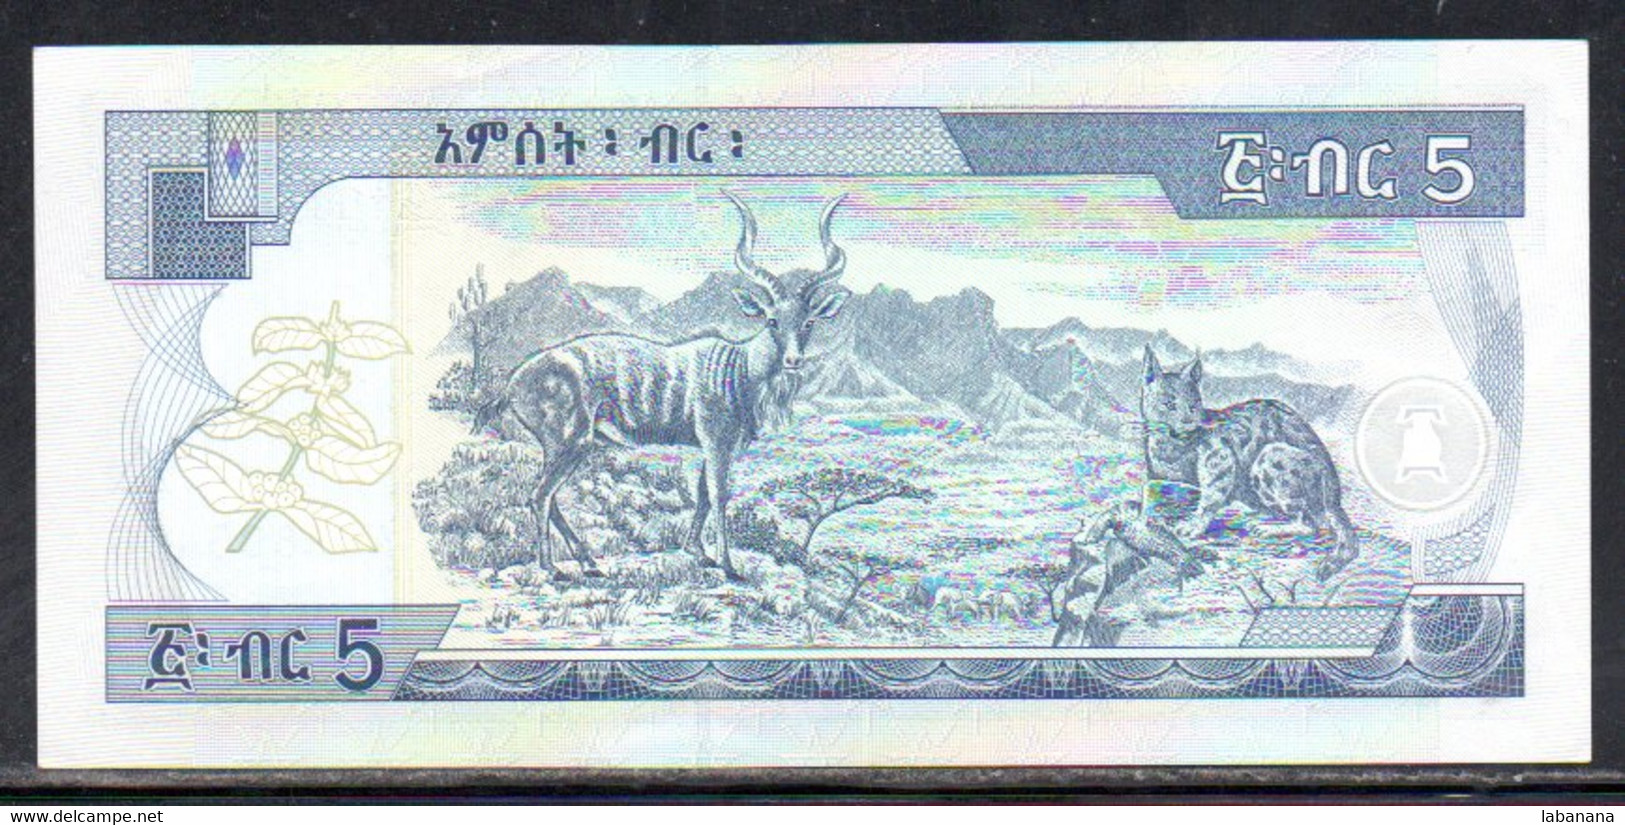 659-Ethiopie 5 Birr 1998 AU963 - Etiopia